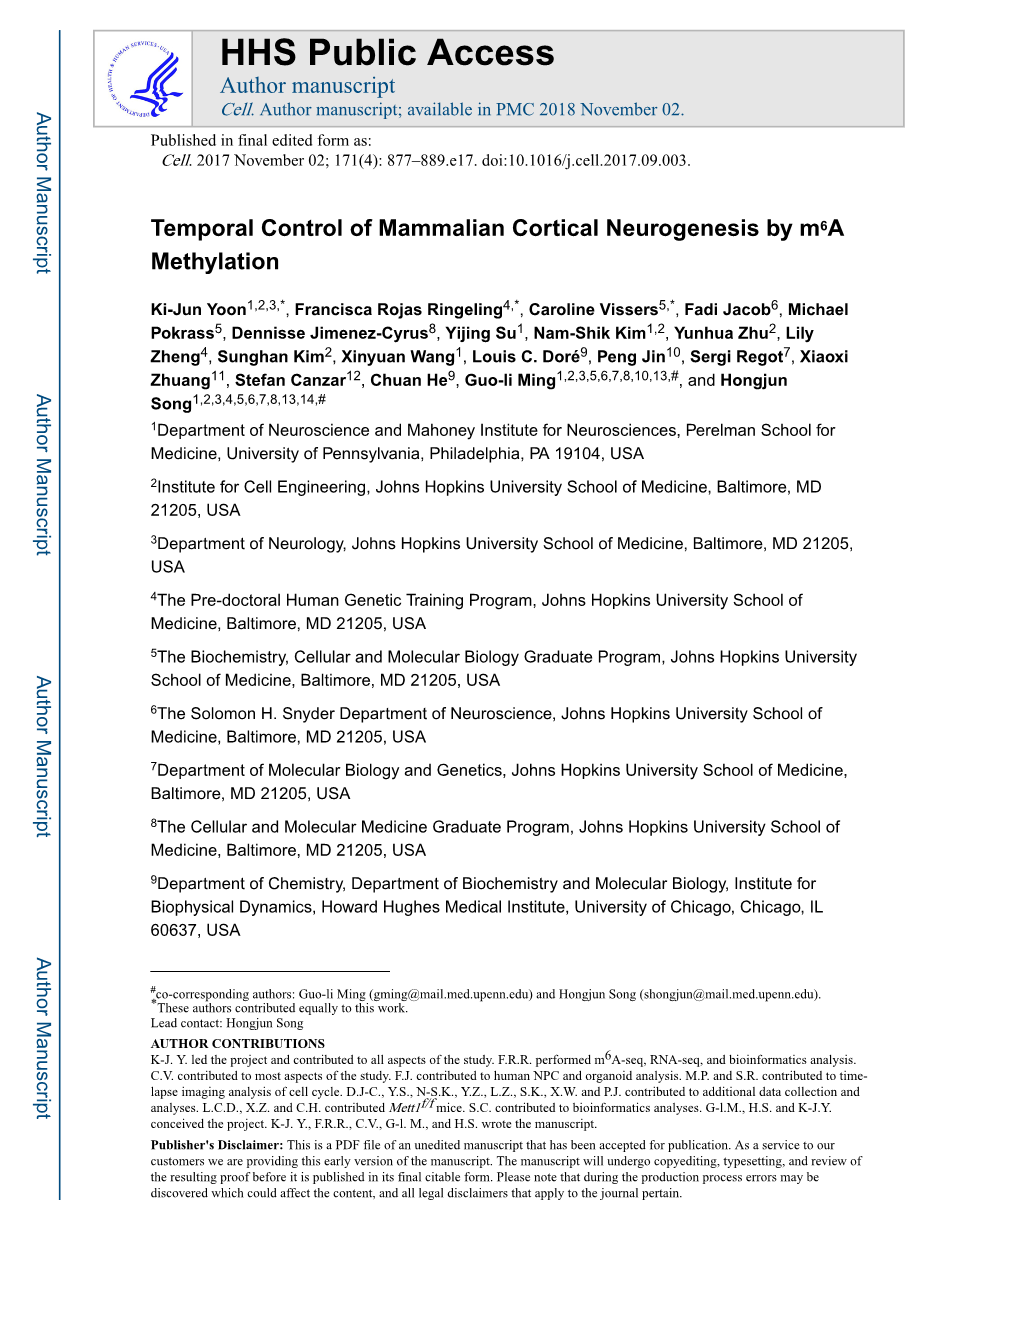 Temporal Control of Mammalian Cortical Neurogenesis by M6a Methylation